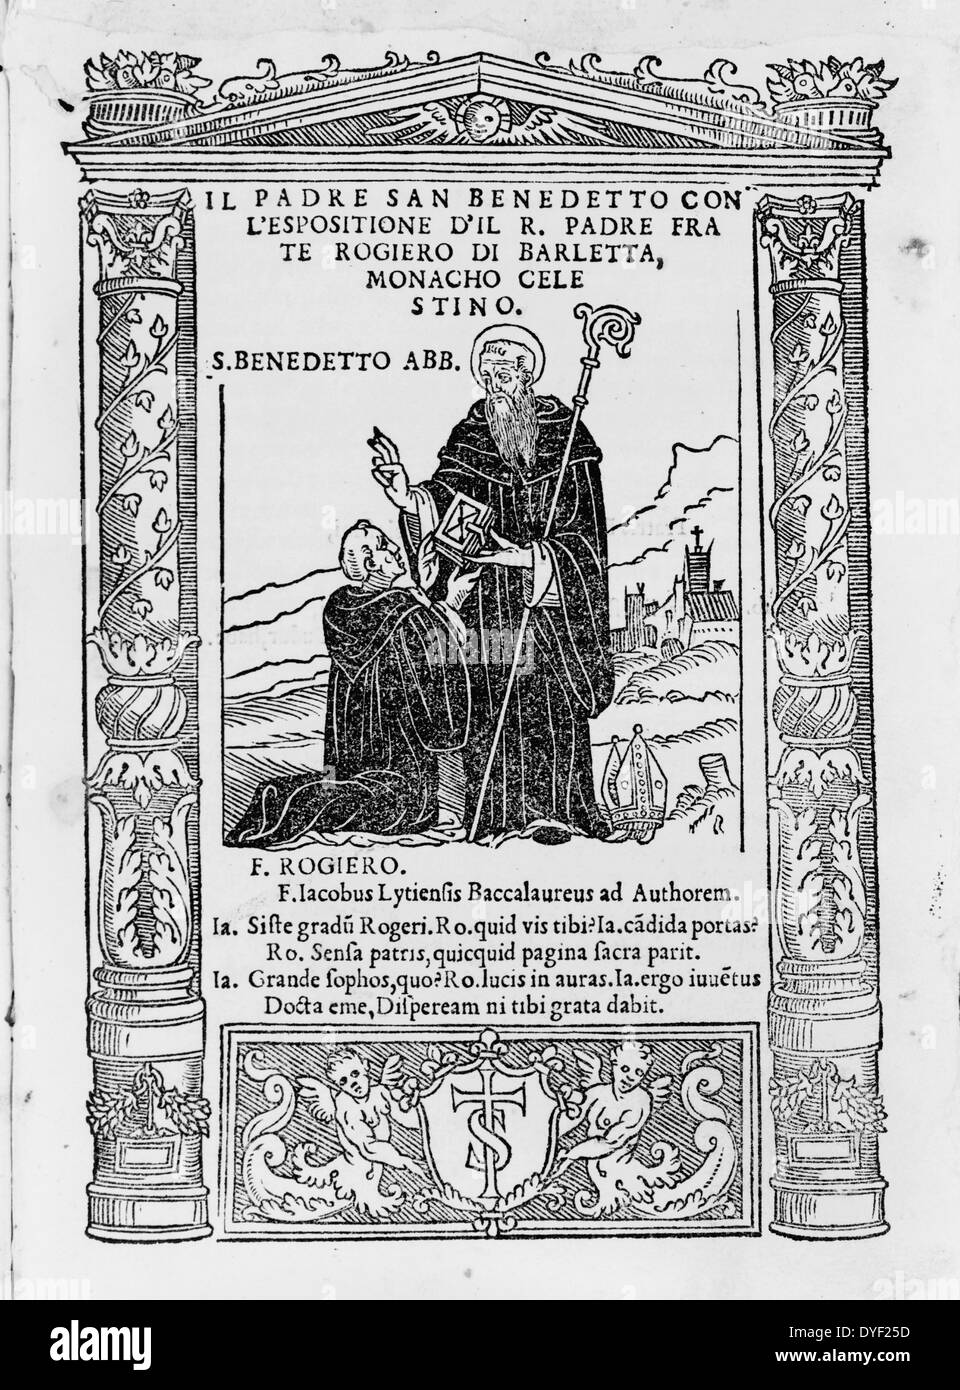 San Benito presentando su normativa monástica a r. padre frate Rogiero di  Barletta, quien está de rodillas delante de él. 1539 Fotografía de stock -  Alamy